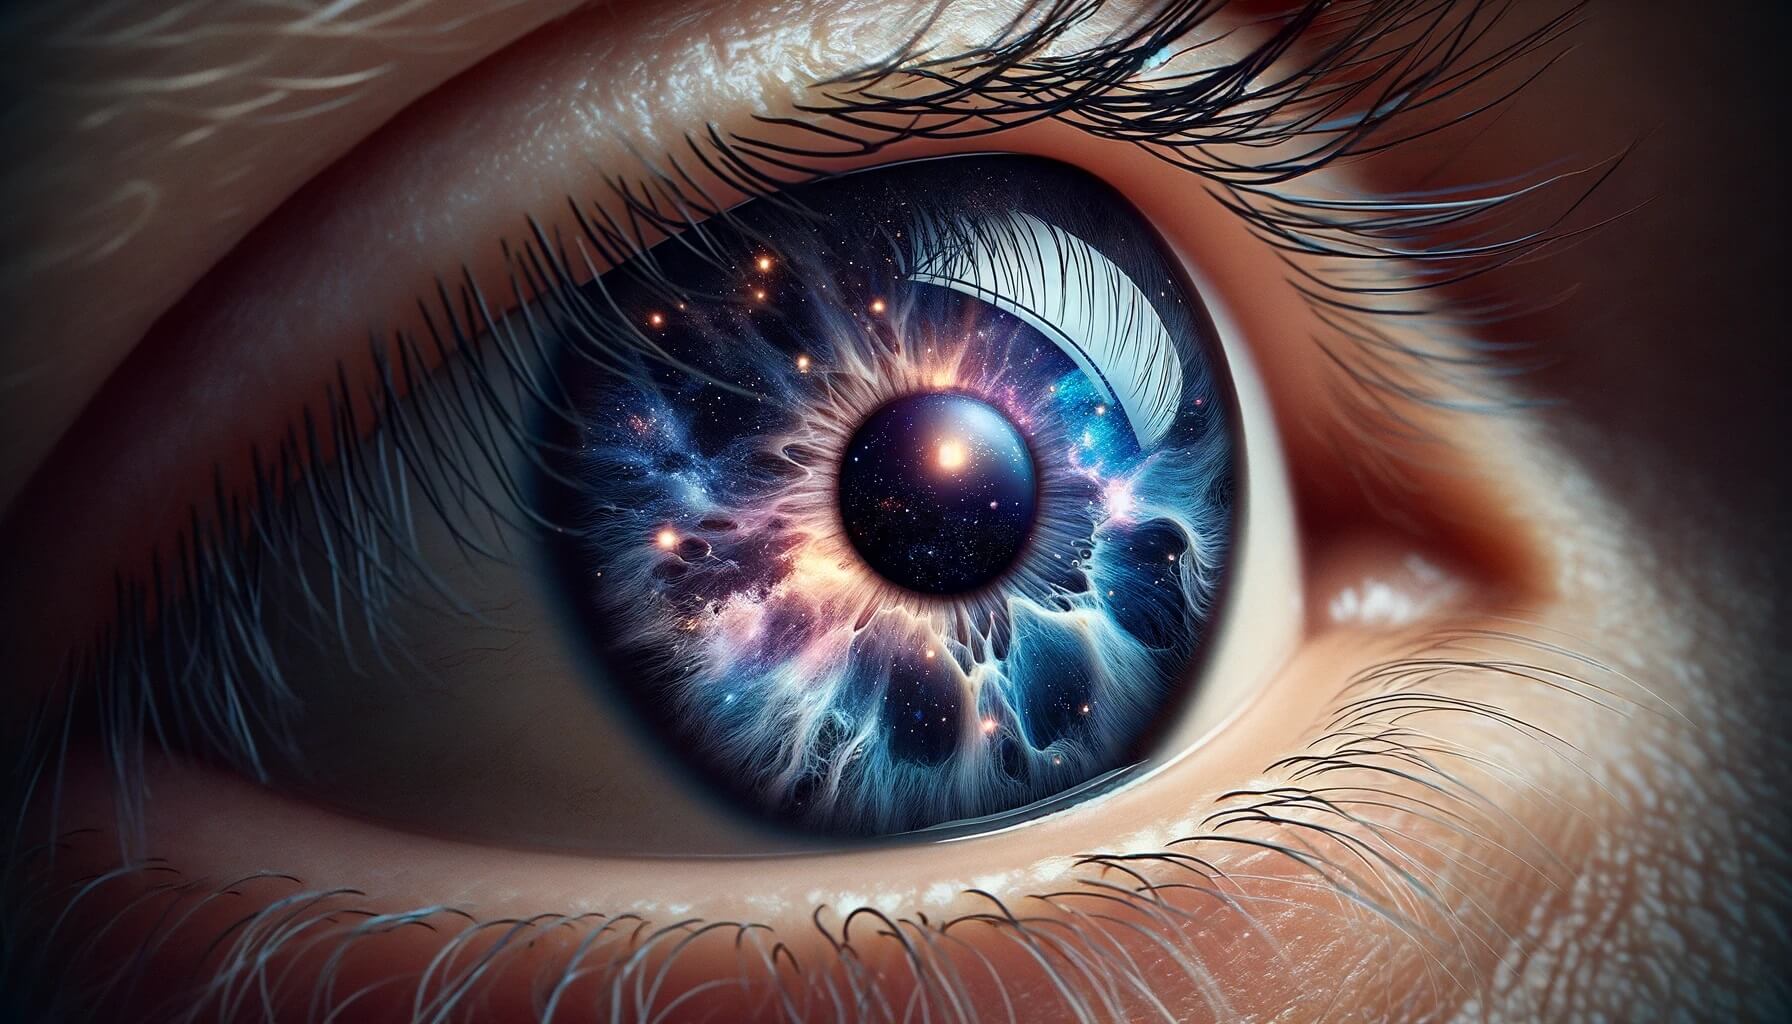 Редкое заболевание делает глаза человека «красивыми как космос». Астероидный гиалоз — болезнь, при которой глаза обретают «космический» вид. Фото.